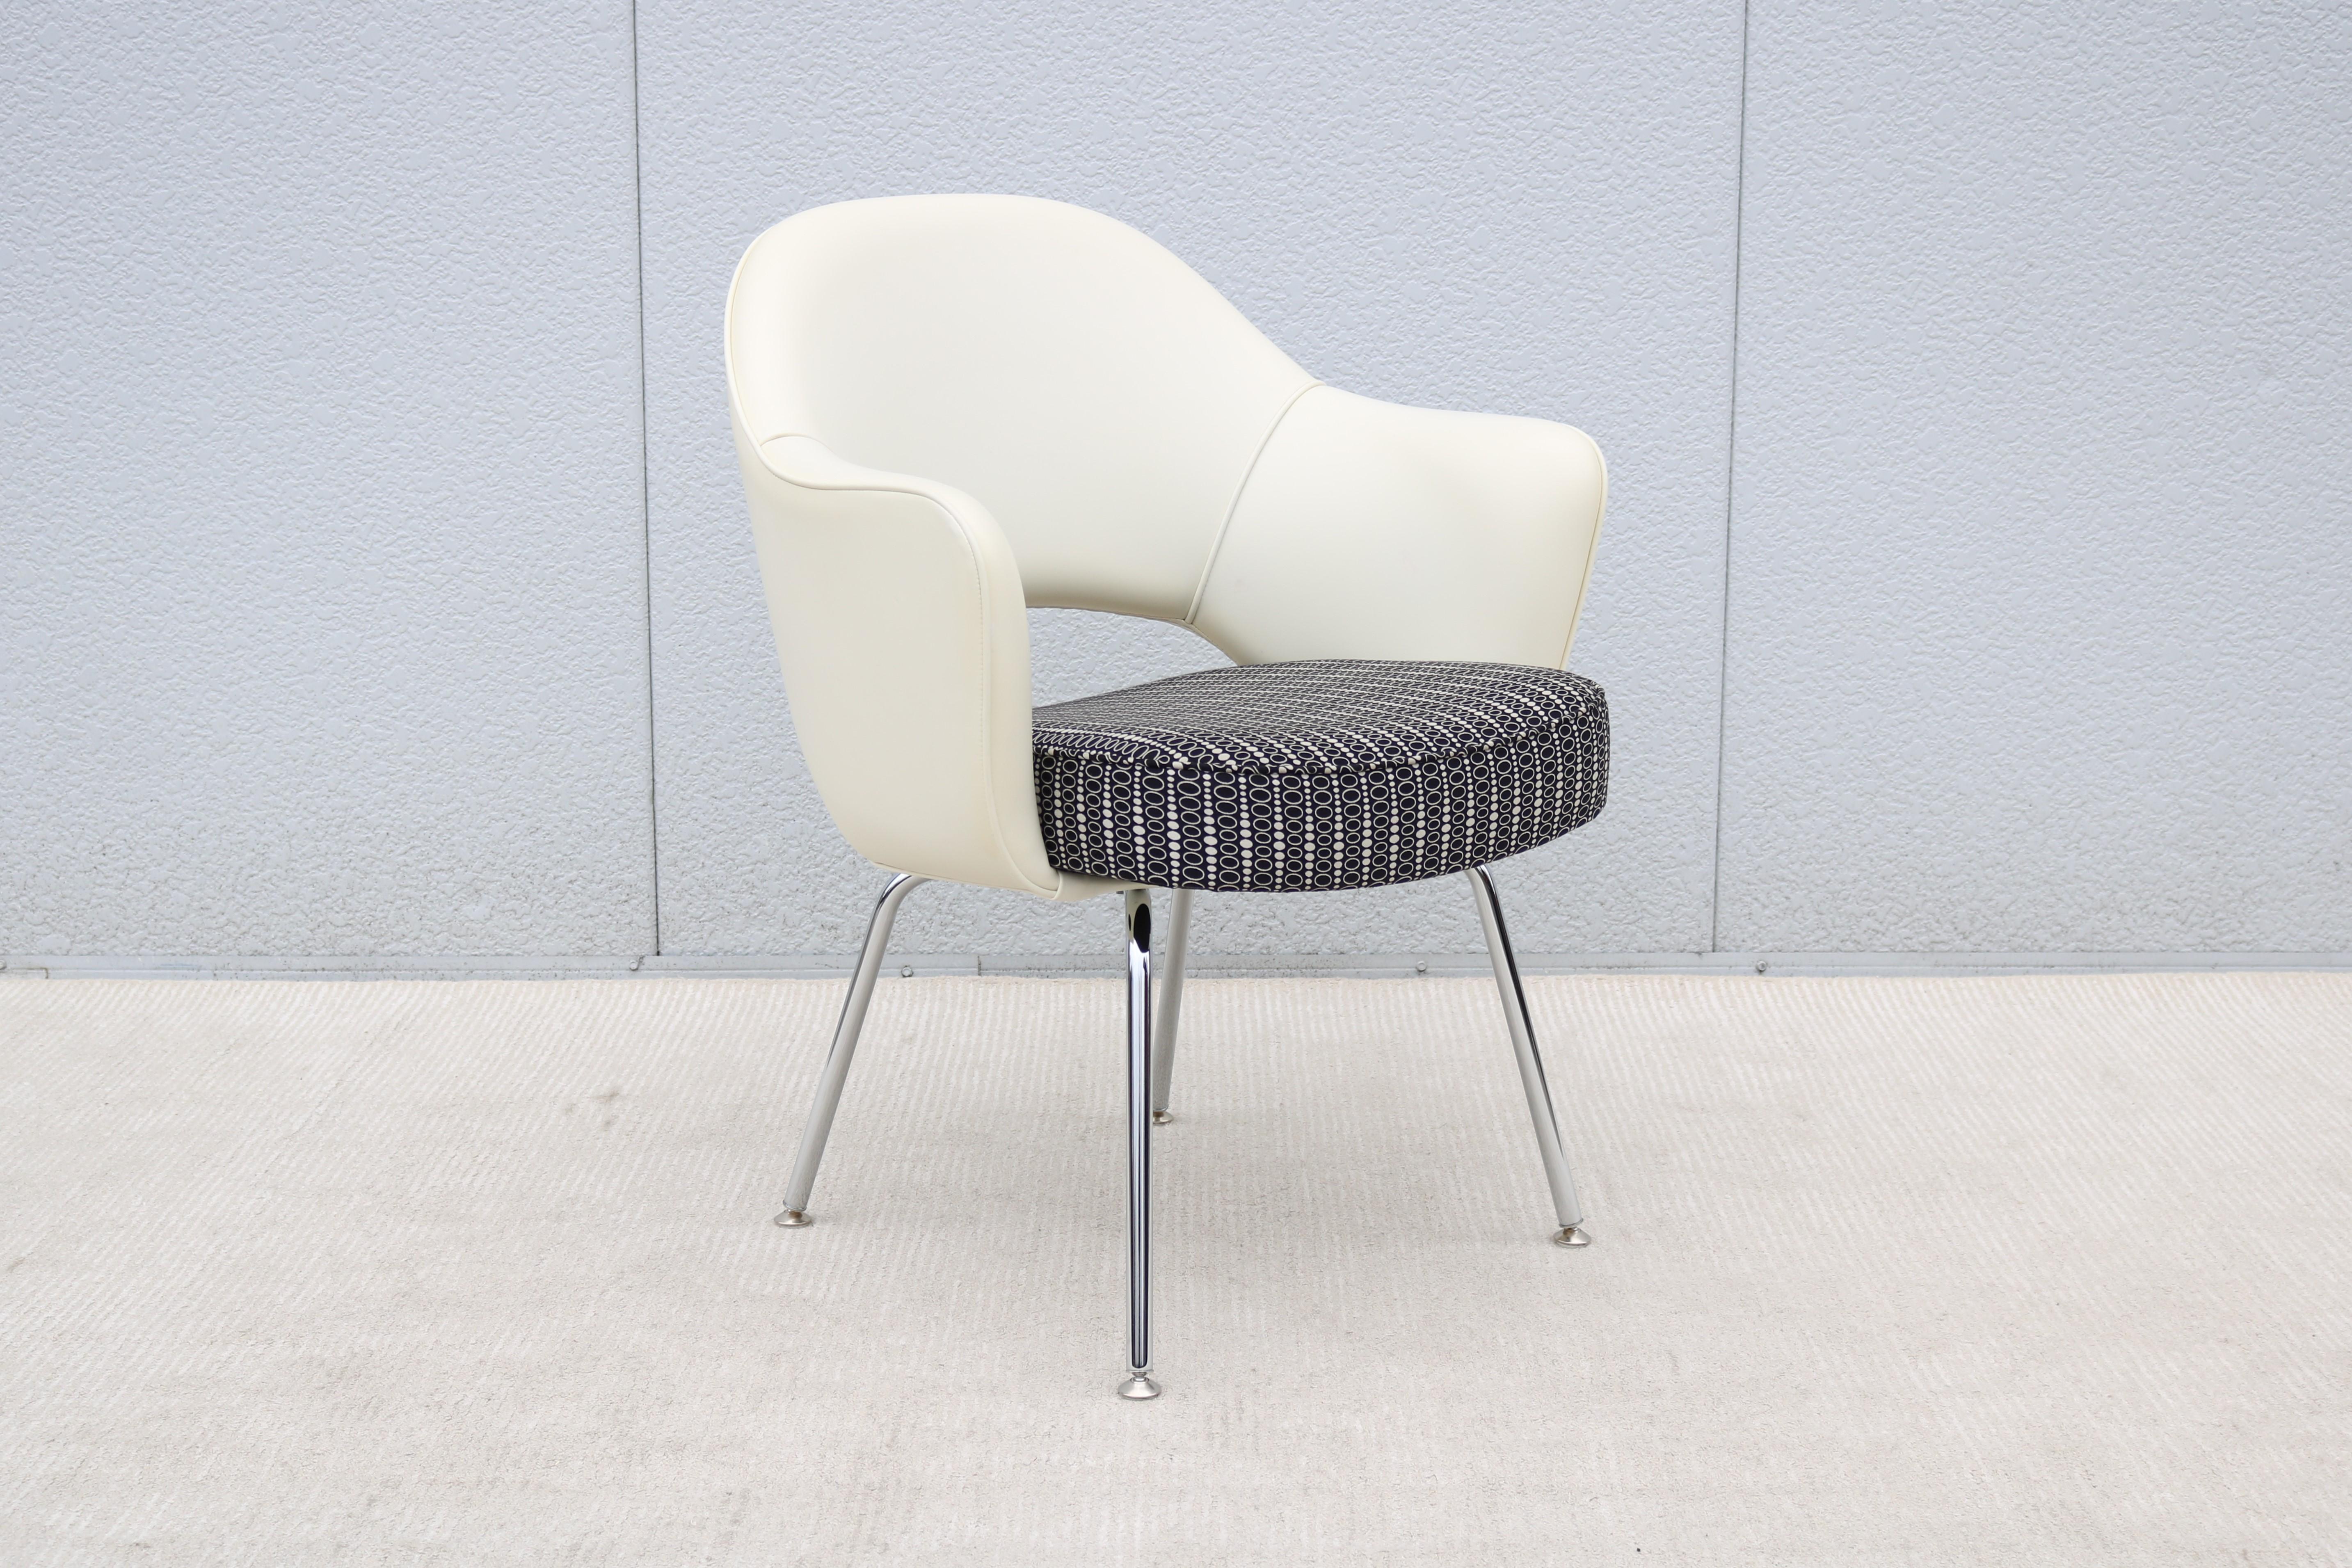 Superbe fauteuil Saarinen Executive de Knoll, authentiquement moderne, datant du milieu du siècle dernier.
L'un des designs les plus populaires de Knoll qui a atteint un confort suprême grâce à la forme de sa coque.
Il a été introduit en 1950, un